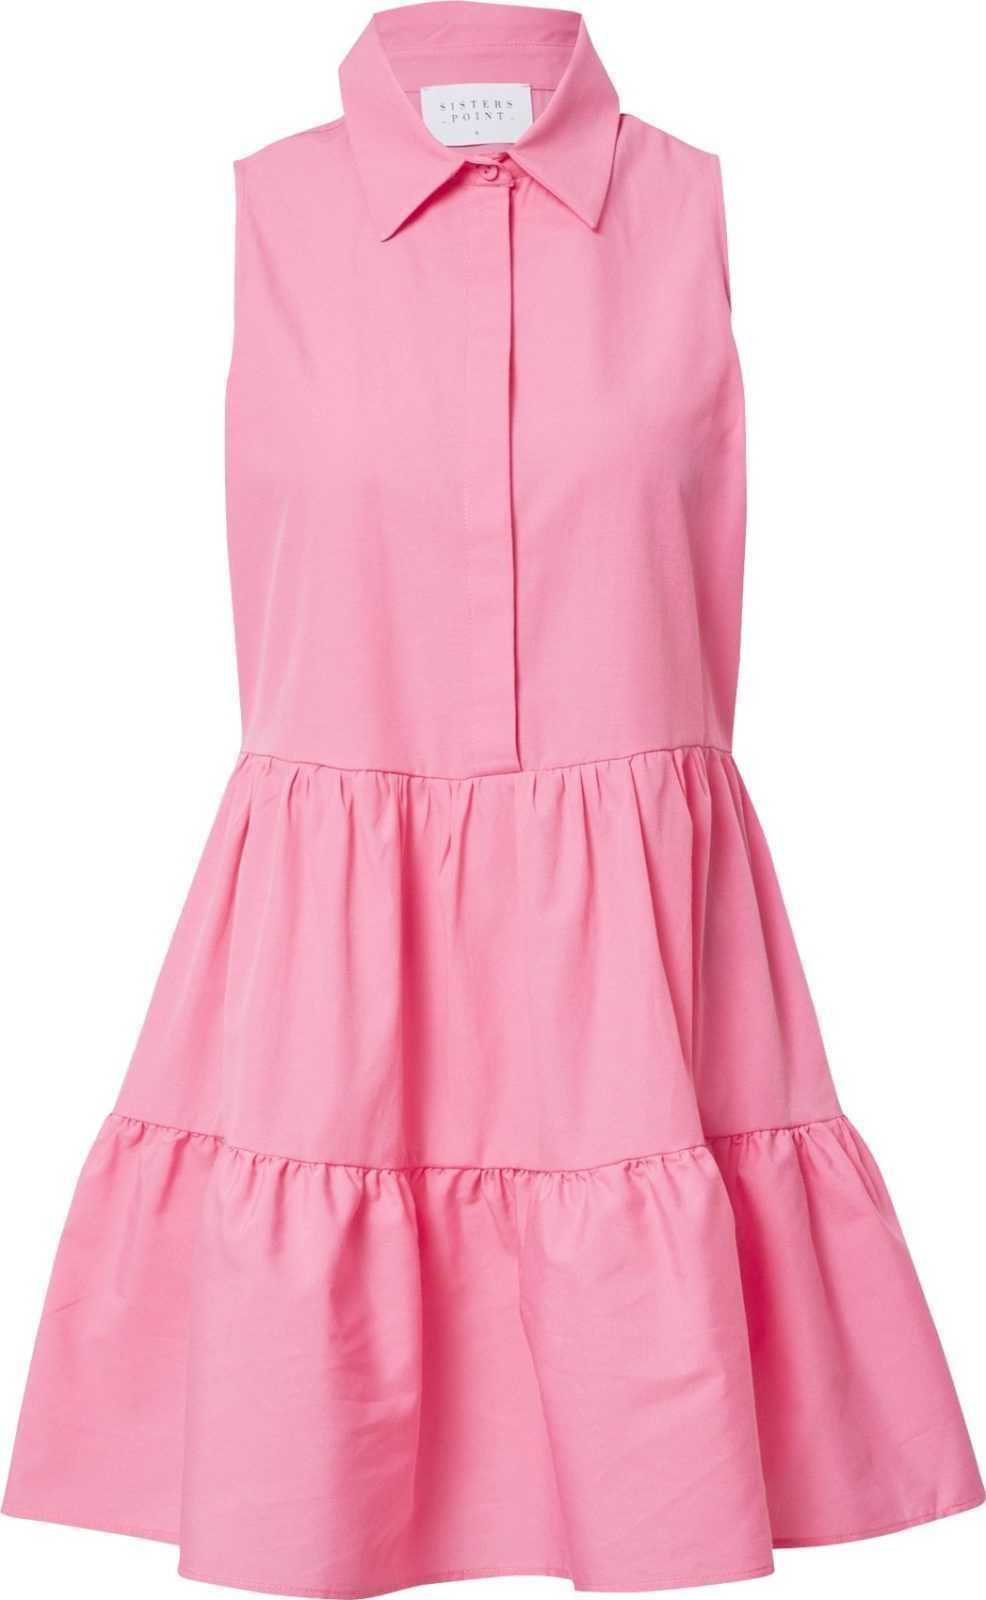 SISTERS POINT Košilové šaty 'MIXA' světle růžová